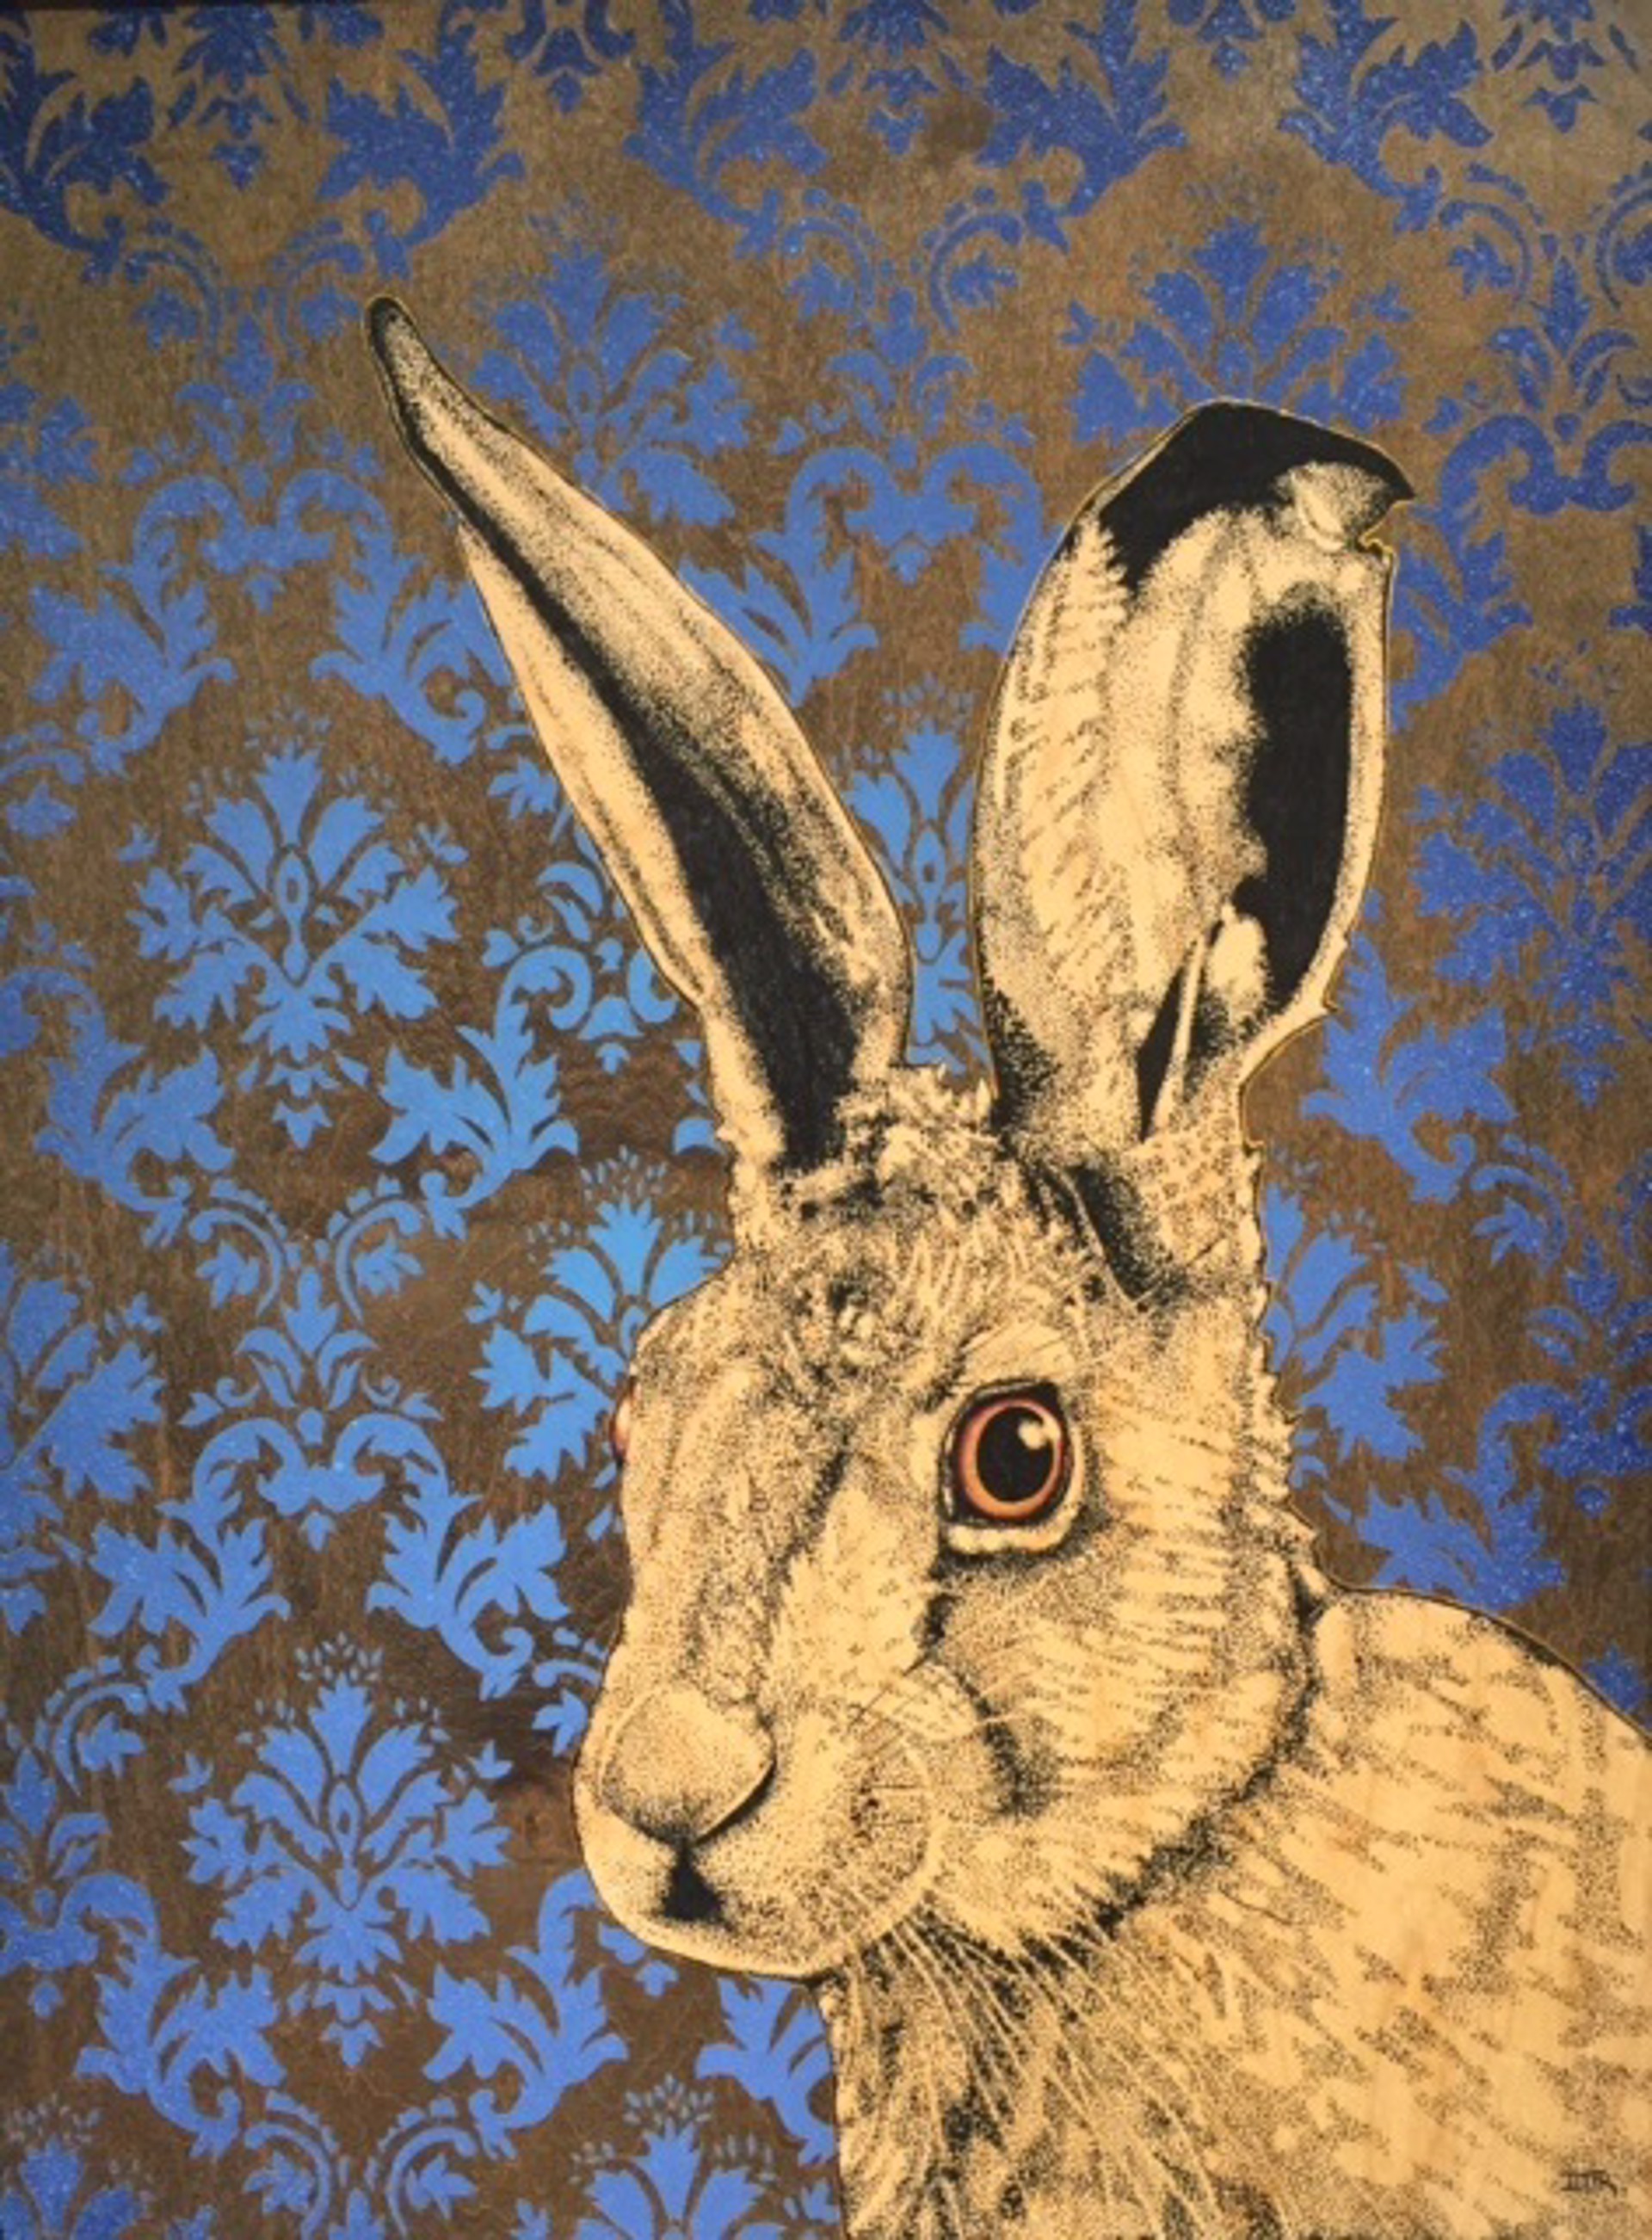 My Fancy Hare by Daniel Ryan